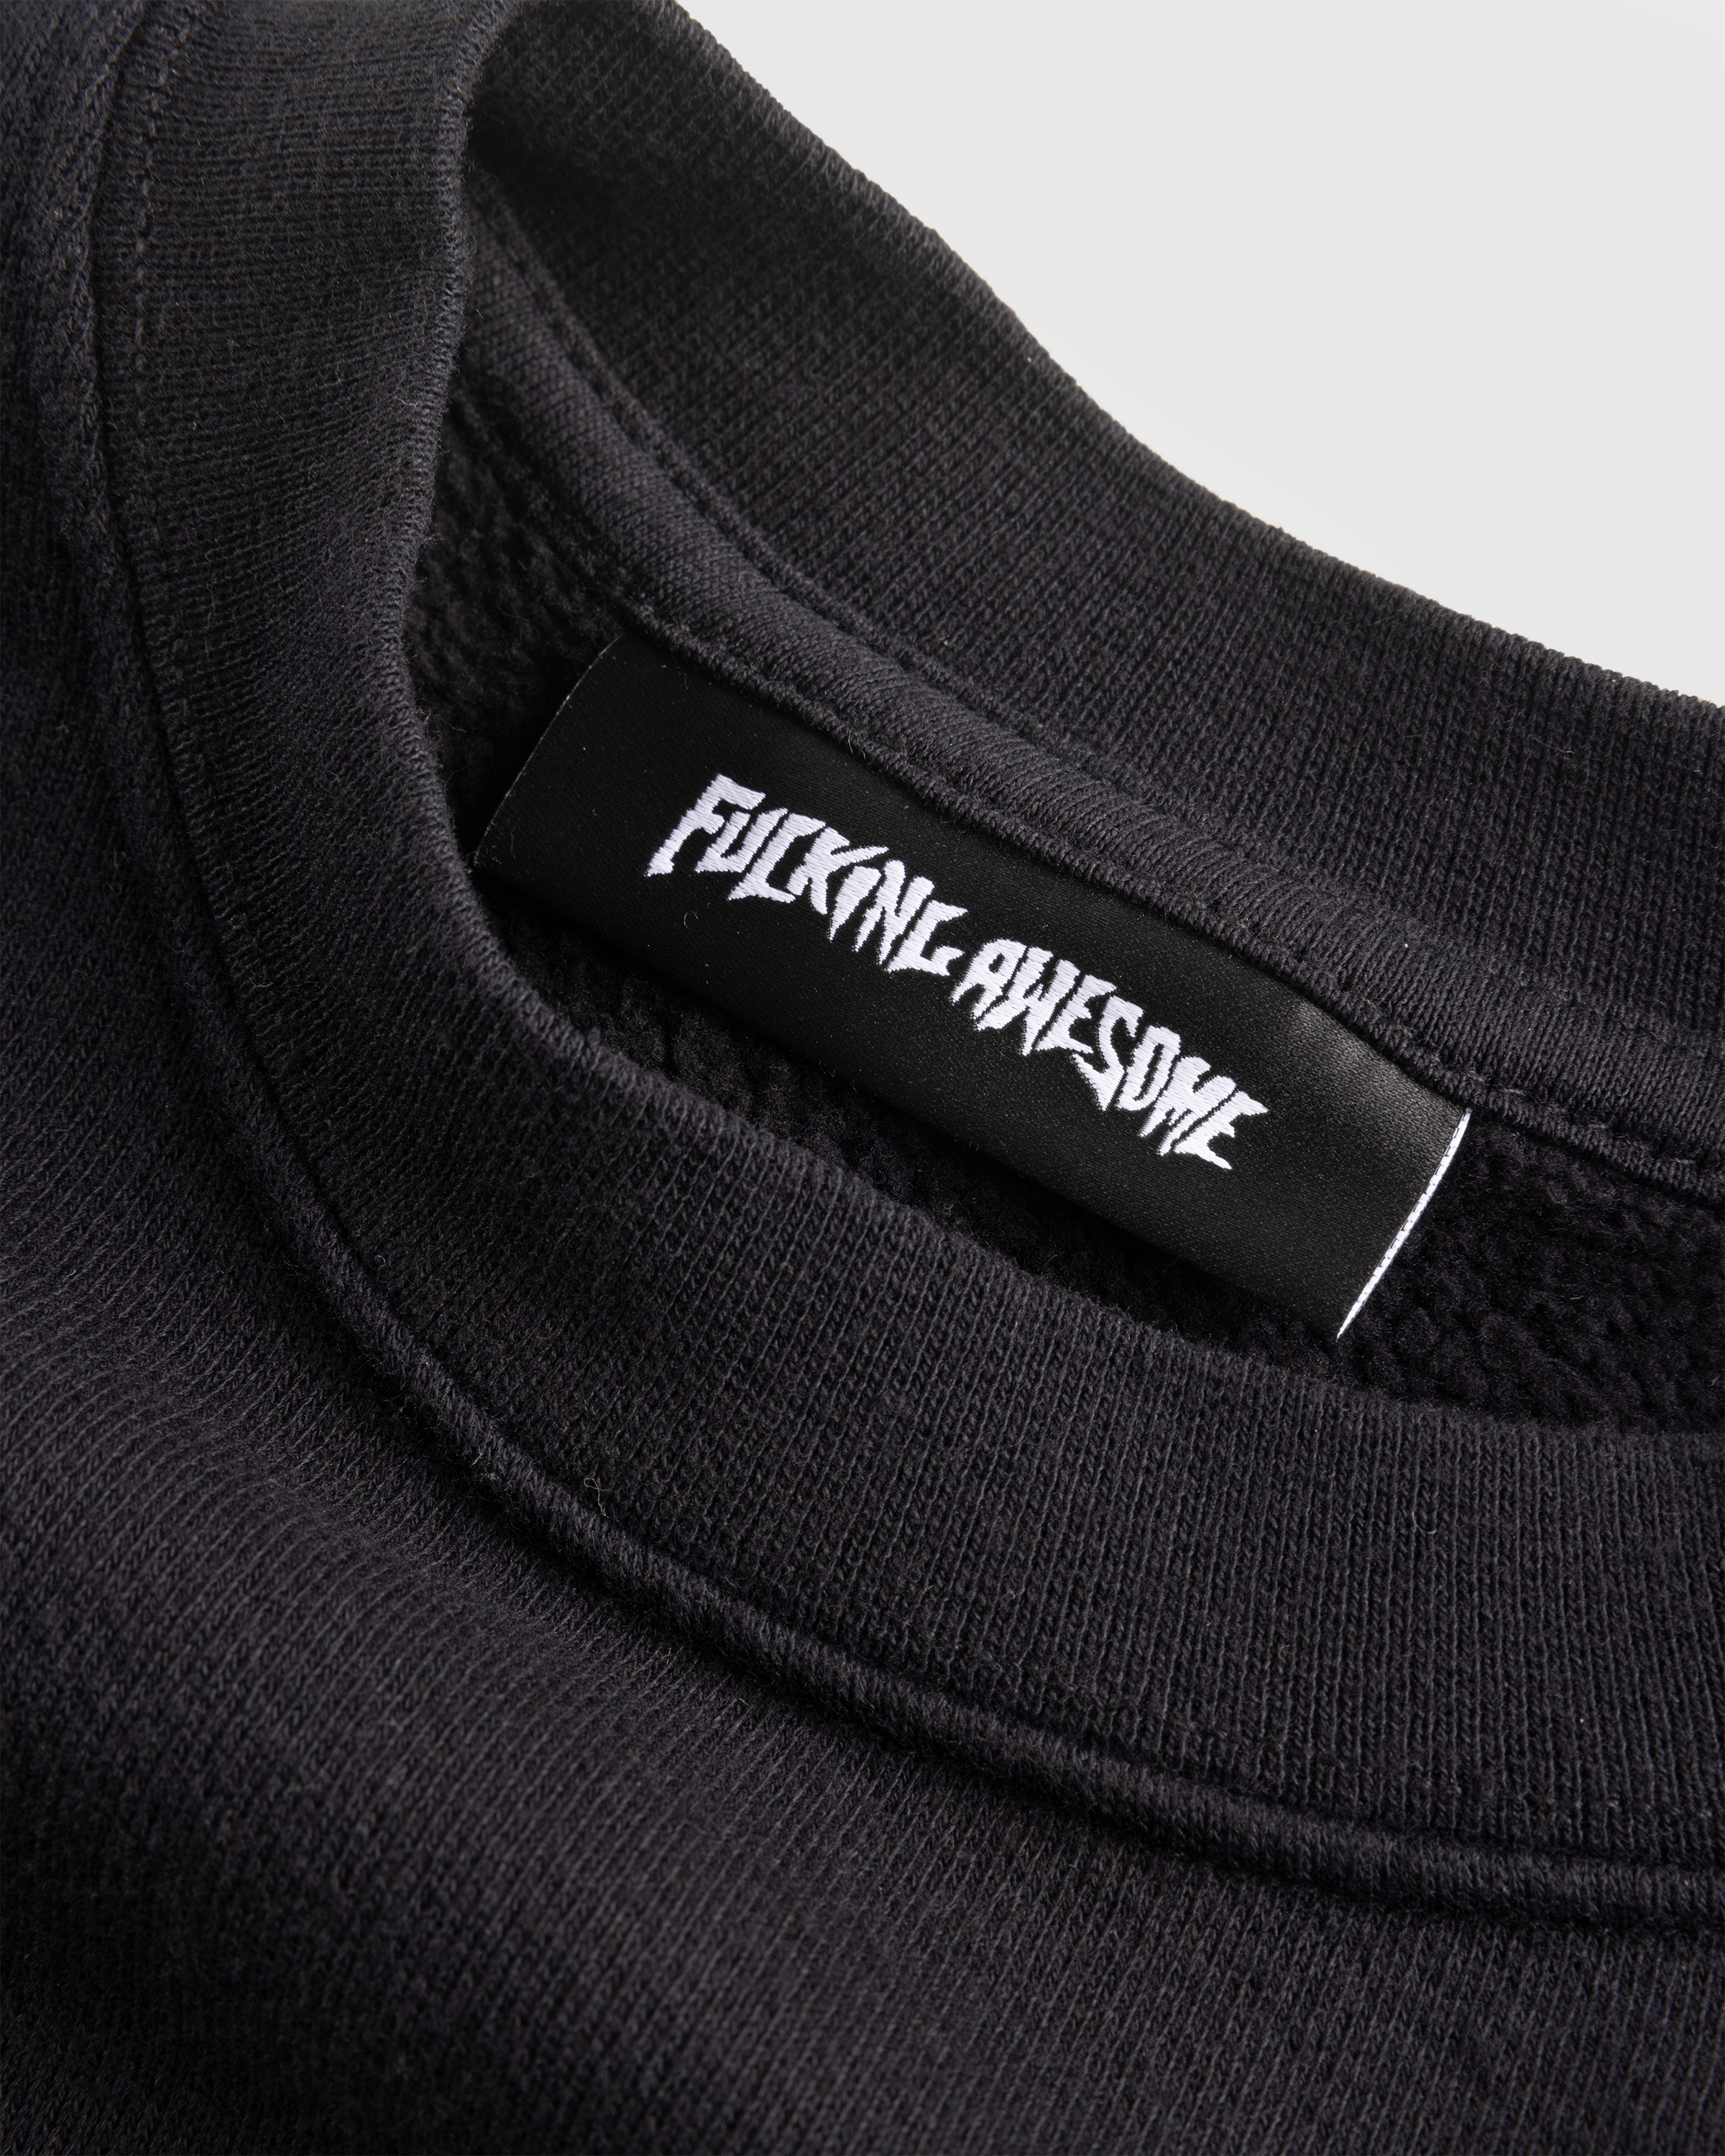 Fucking Awesome – Doily Stamp Crewneck Black - Sweatshirts - Black - Image 6